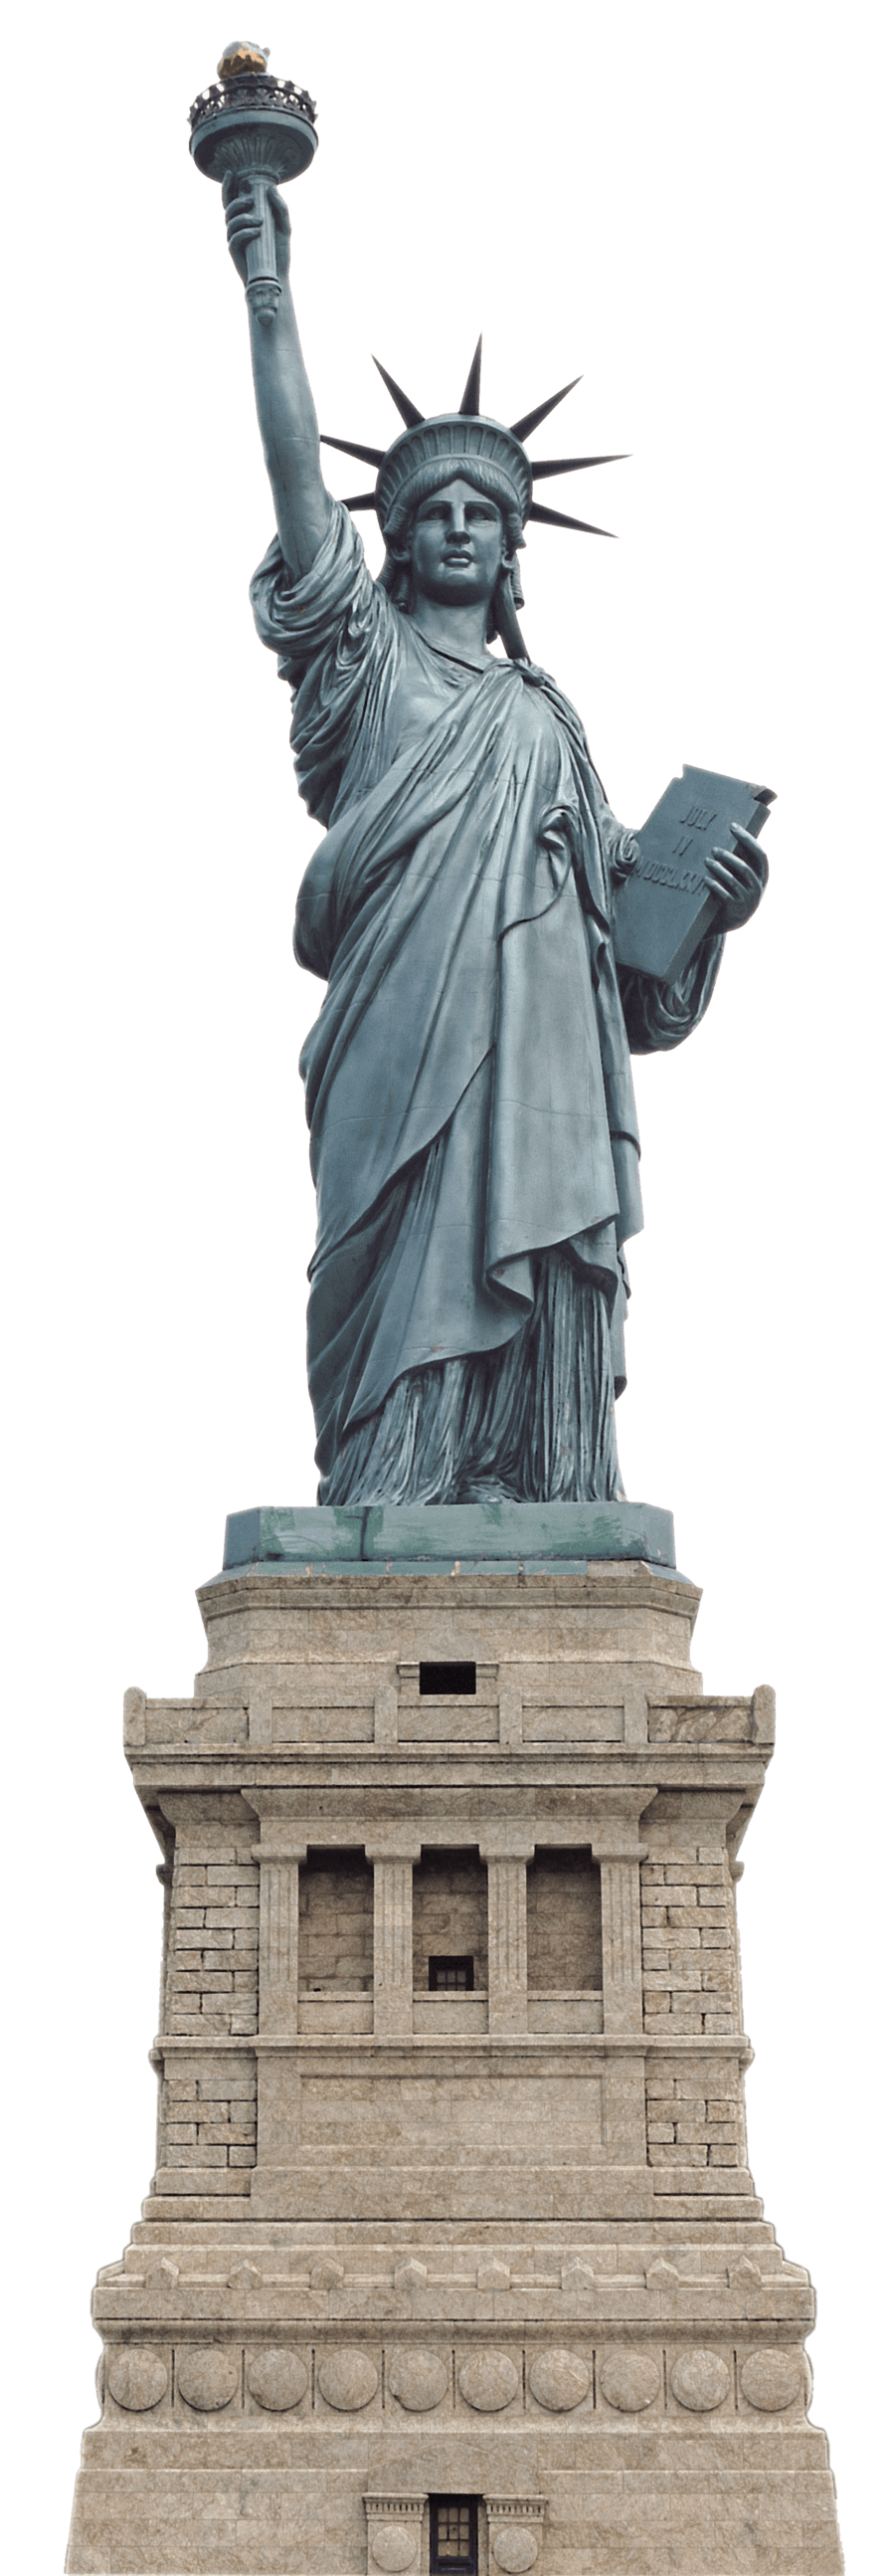 تمثال ليبرتي صورة شفافة